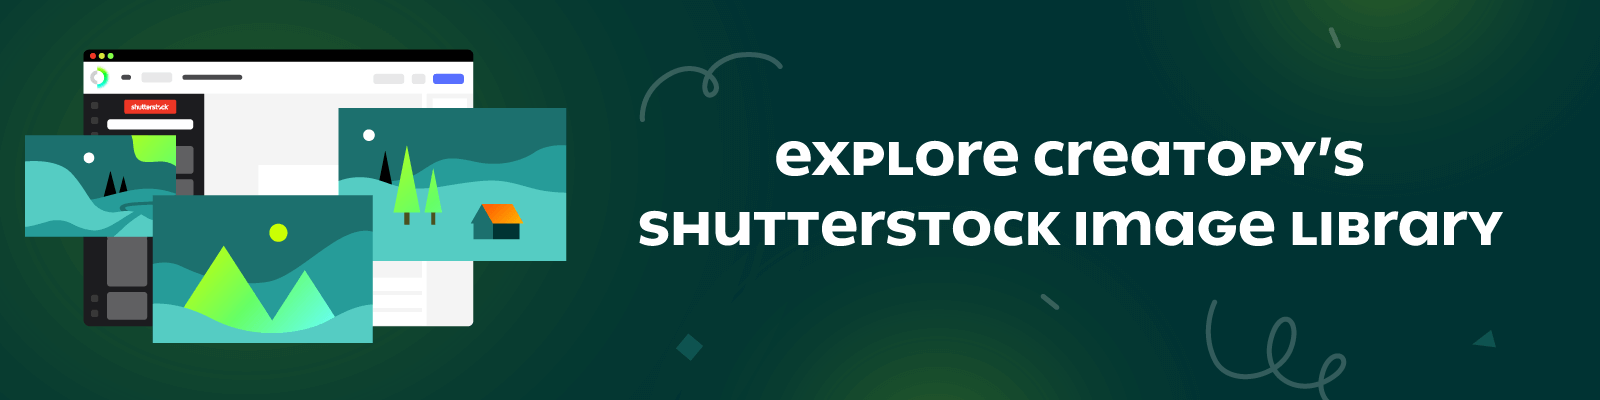 Shutterstock Integration CTA Revised